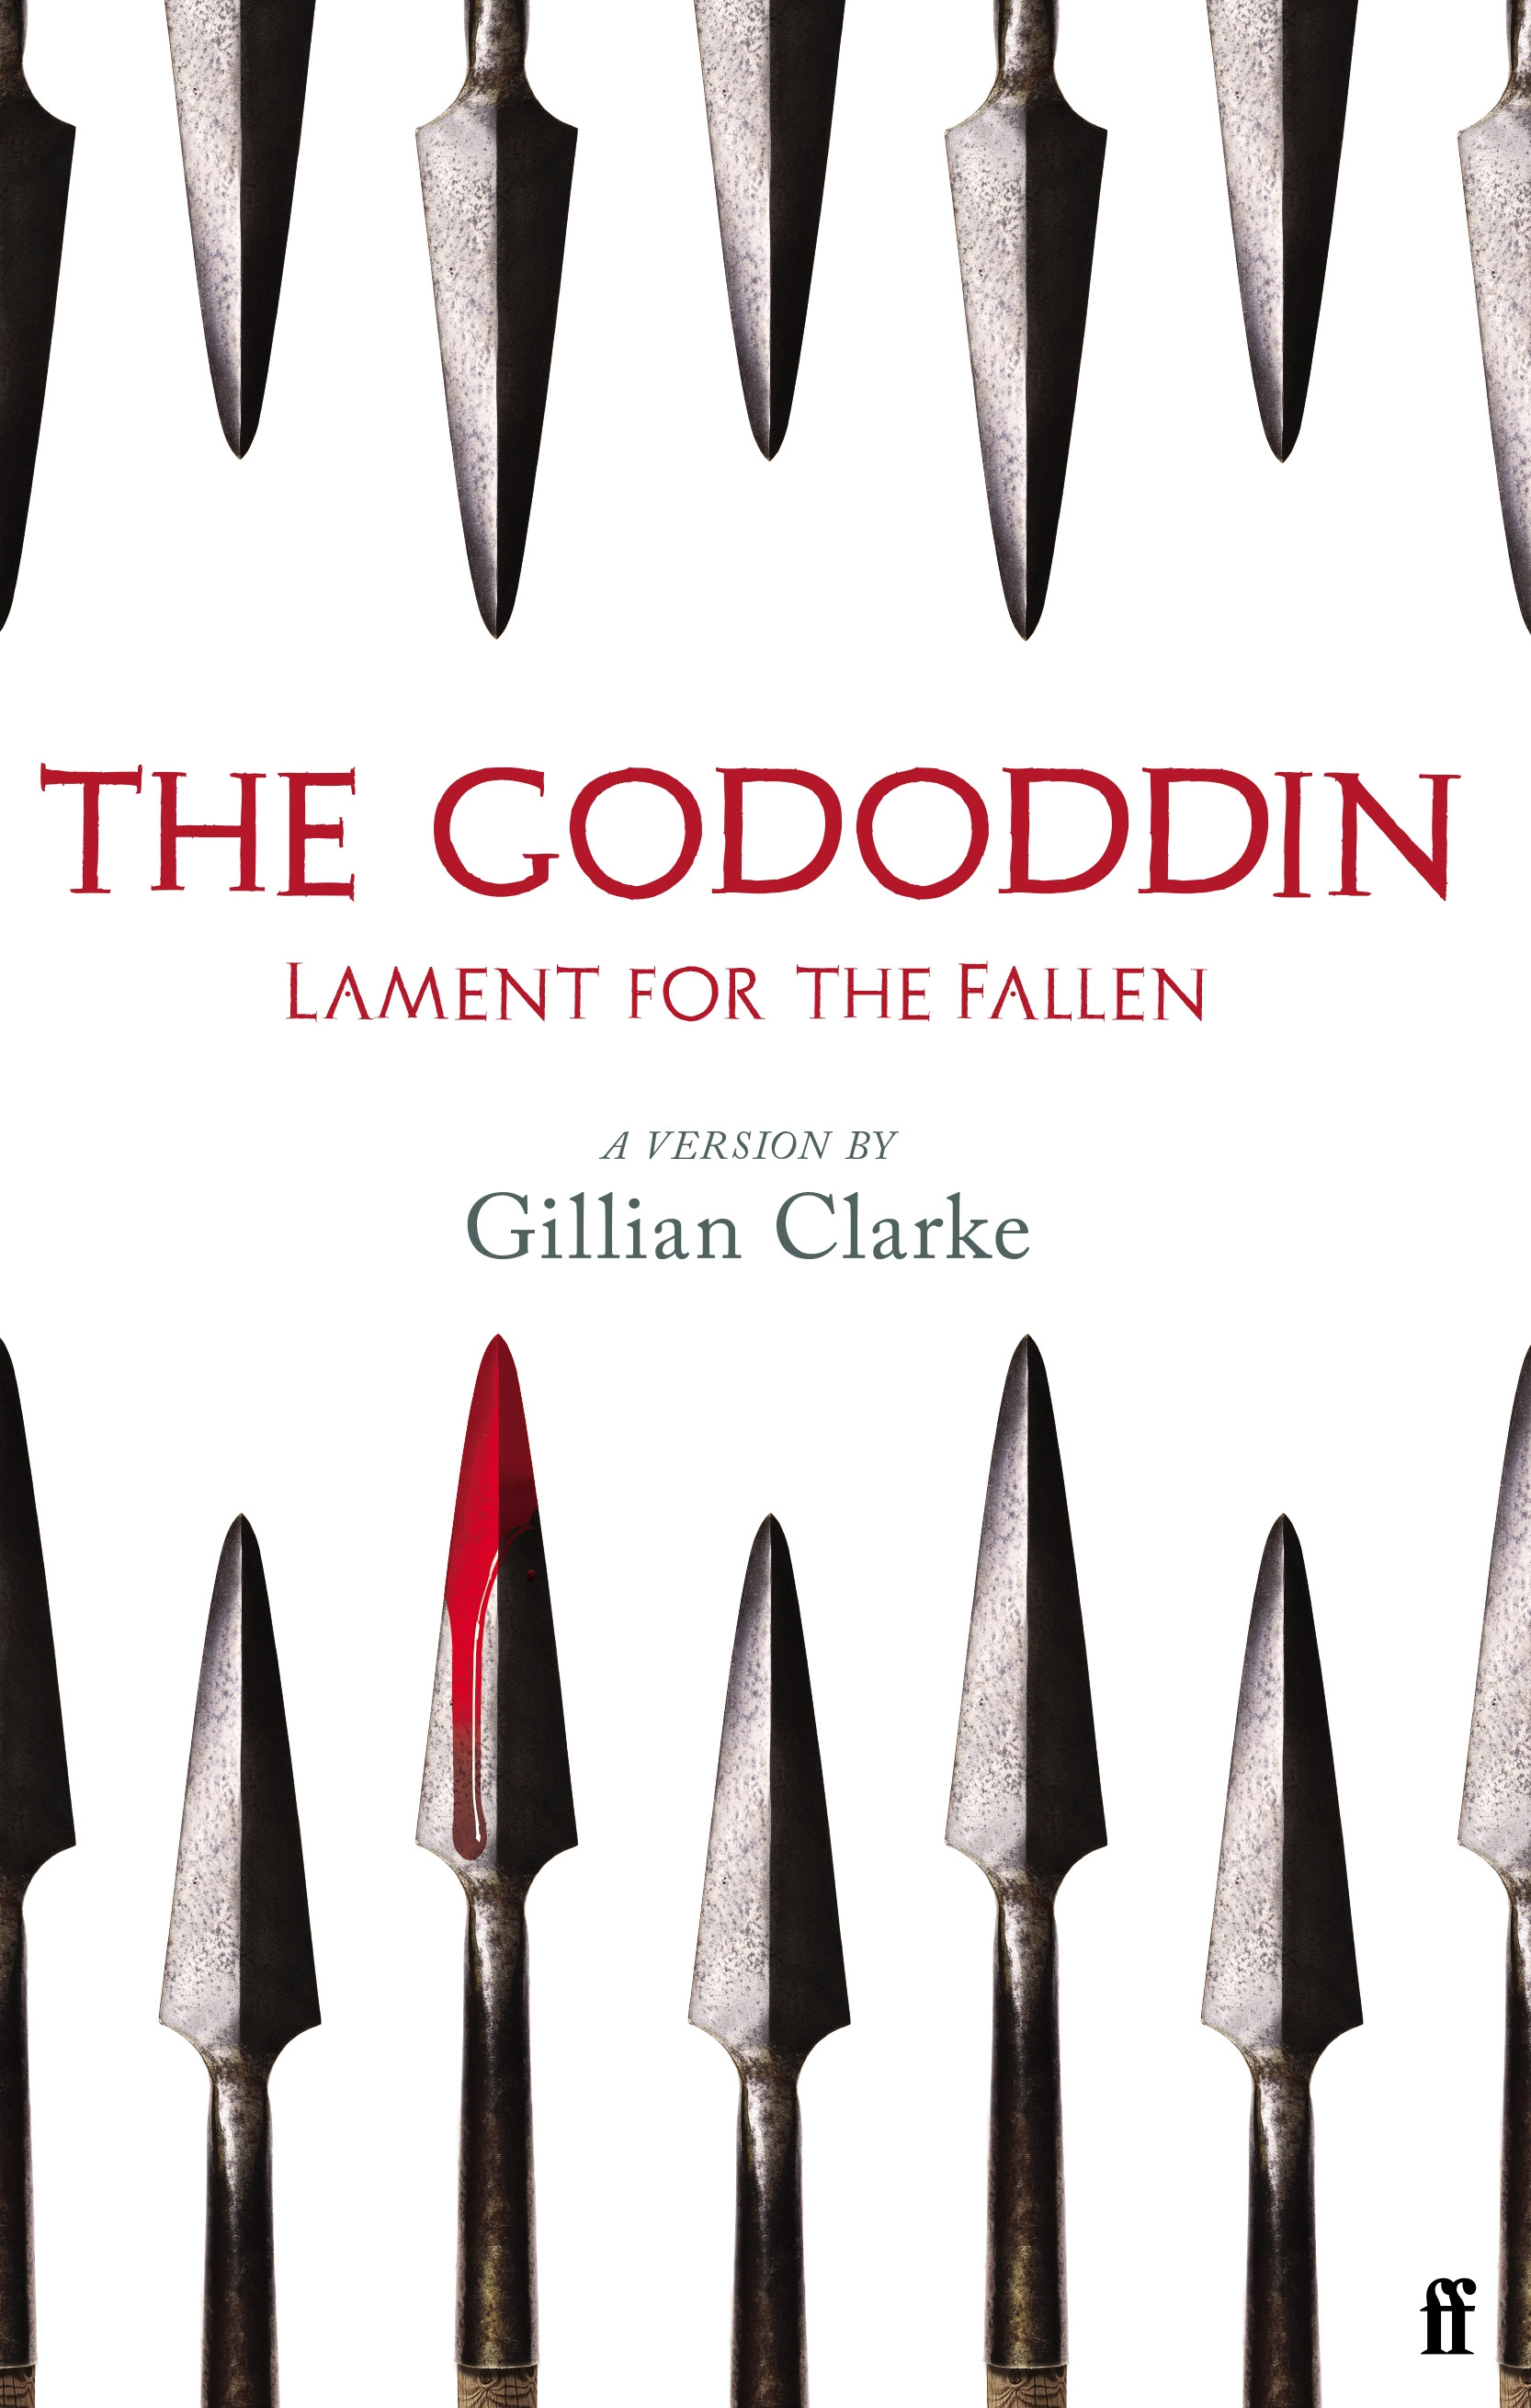 The Gododdin: Lament for the Fallen in Kindle/PDF/EPUB